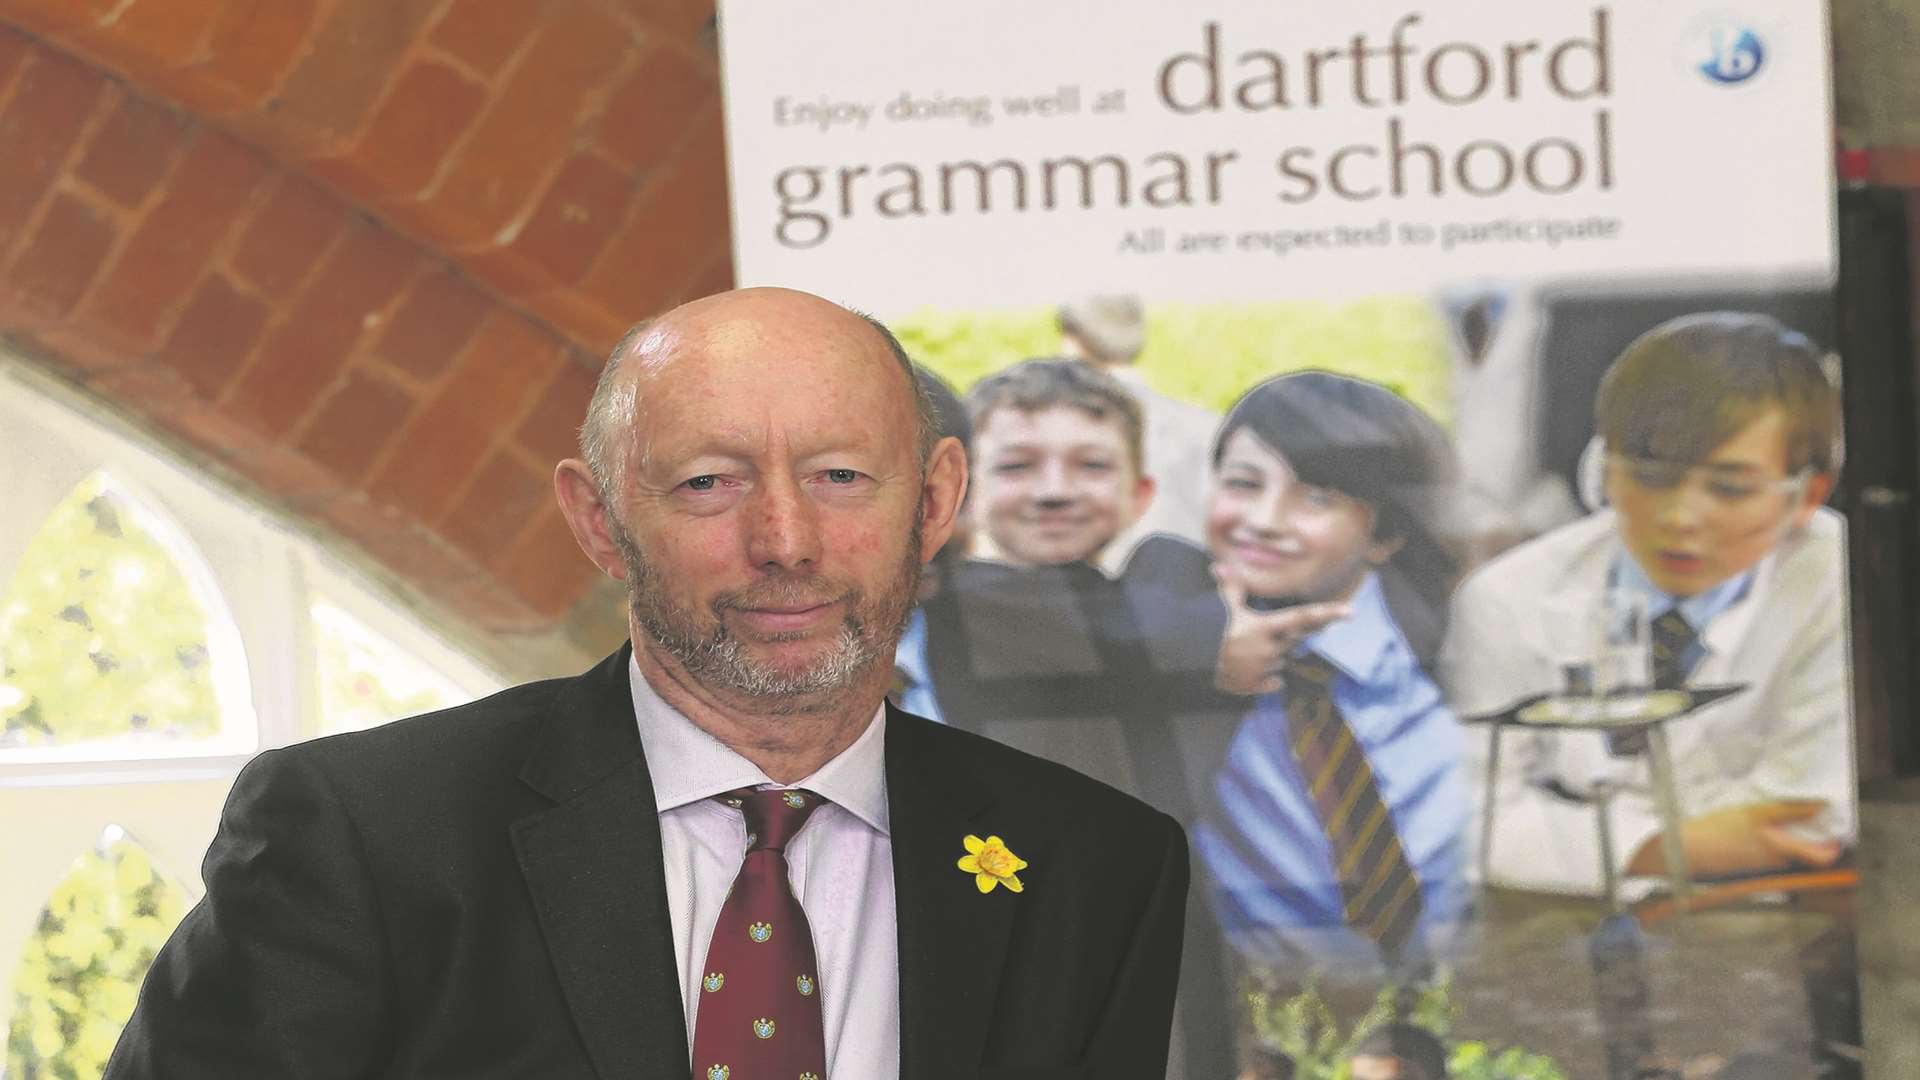 John Oakes, Headmaster of Dartford Grammar School